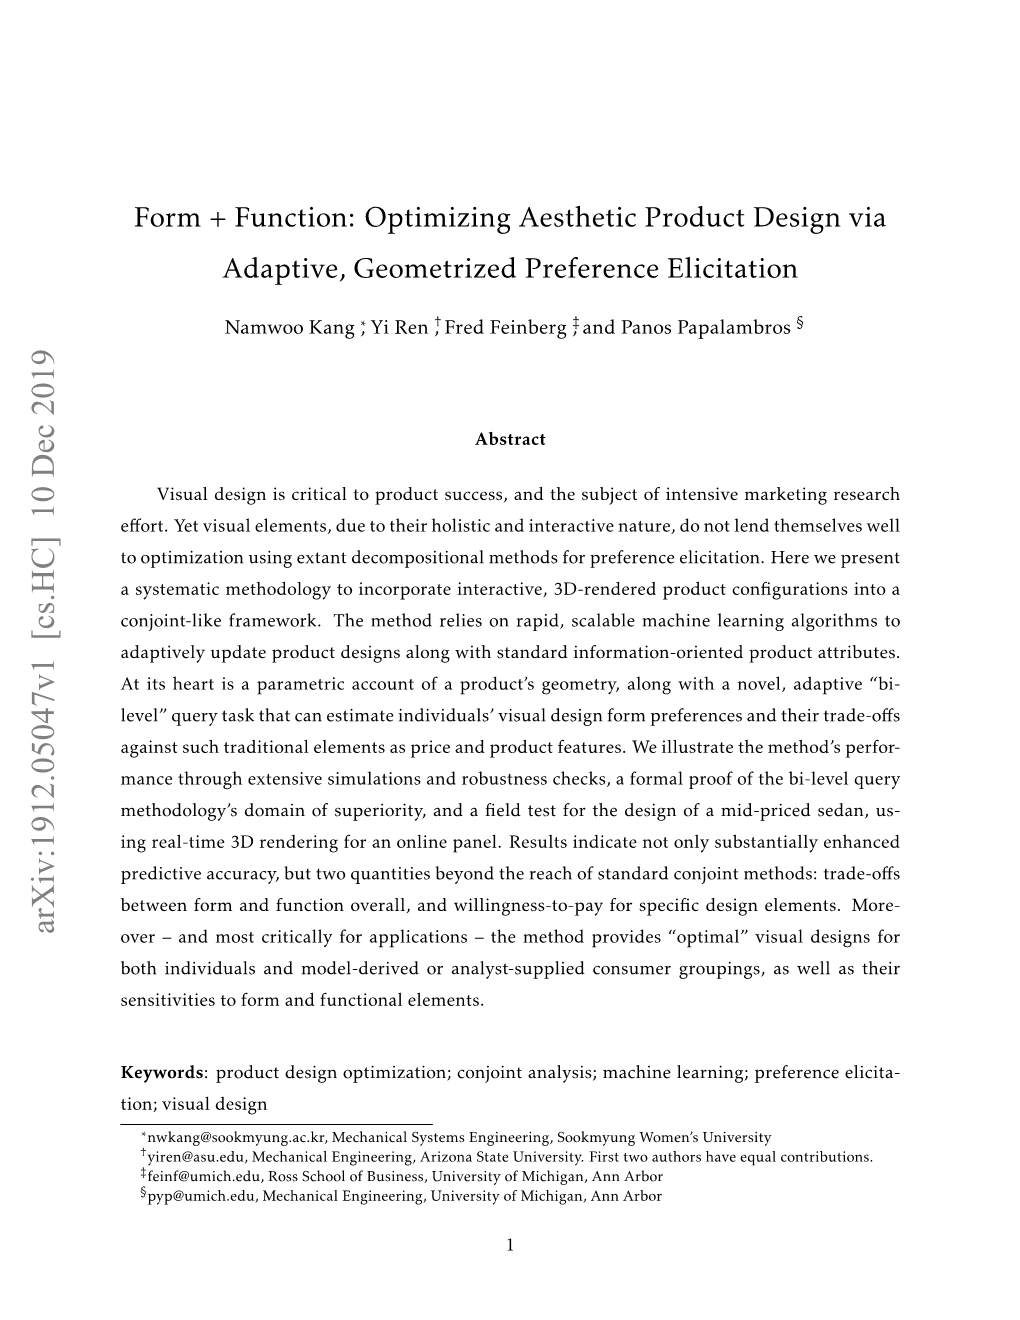 Form + Function: Optimizing Aesthetic Product Design Via Adaptive, Geometrized Preference Elicitation